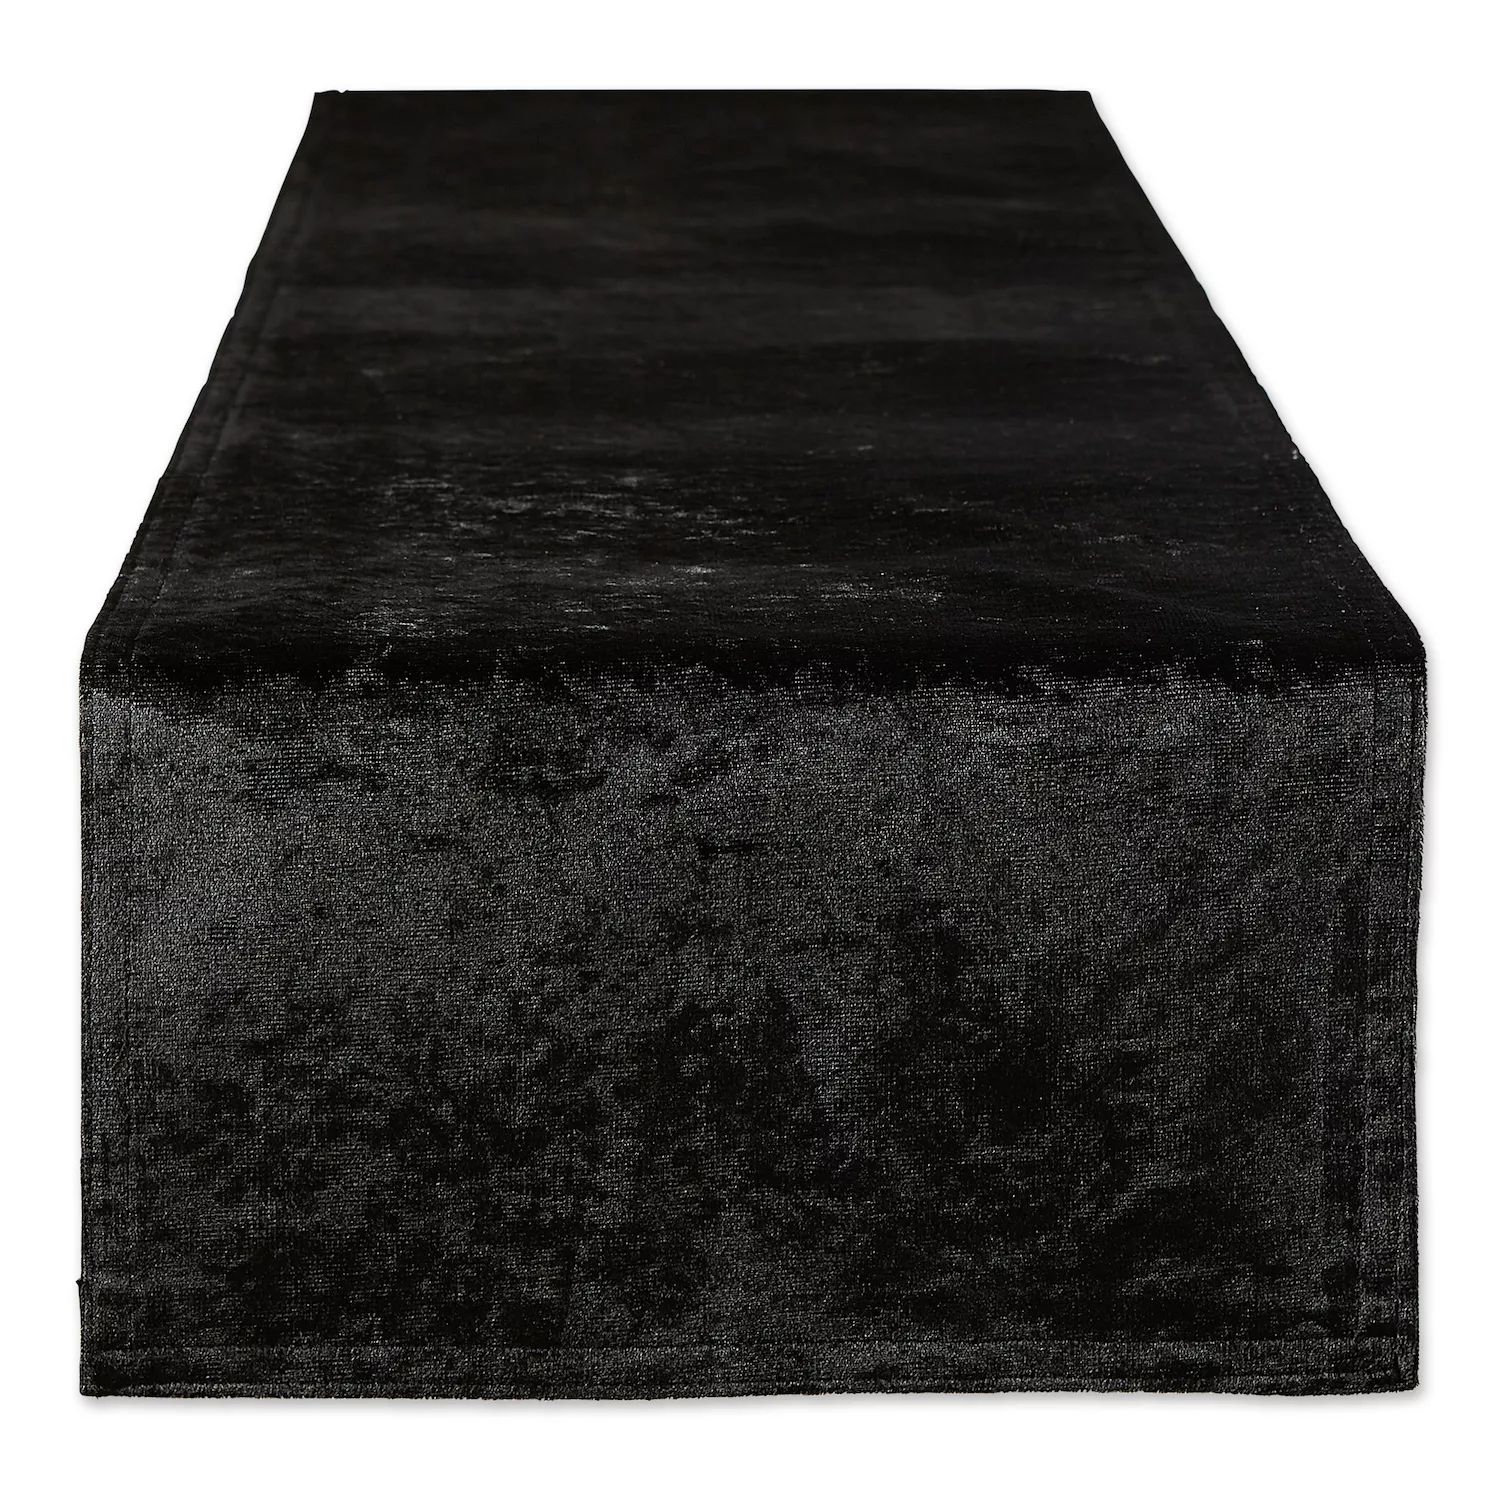 Черная бархатная декоративная скамейка размером 14 x 72 дюйма